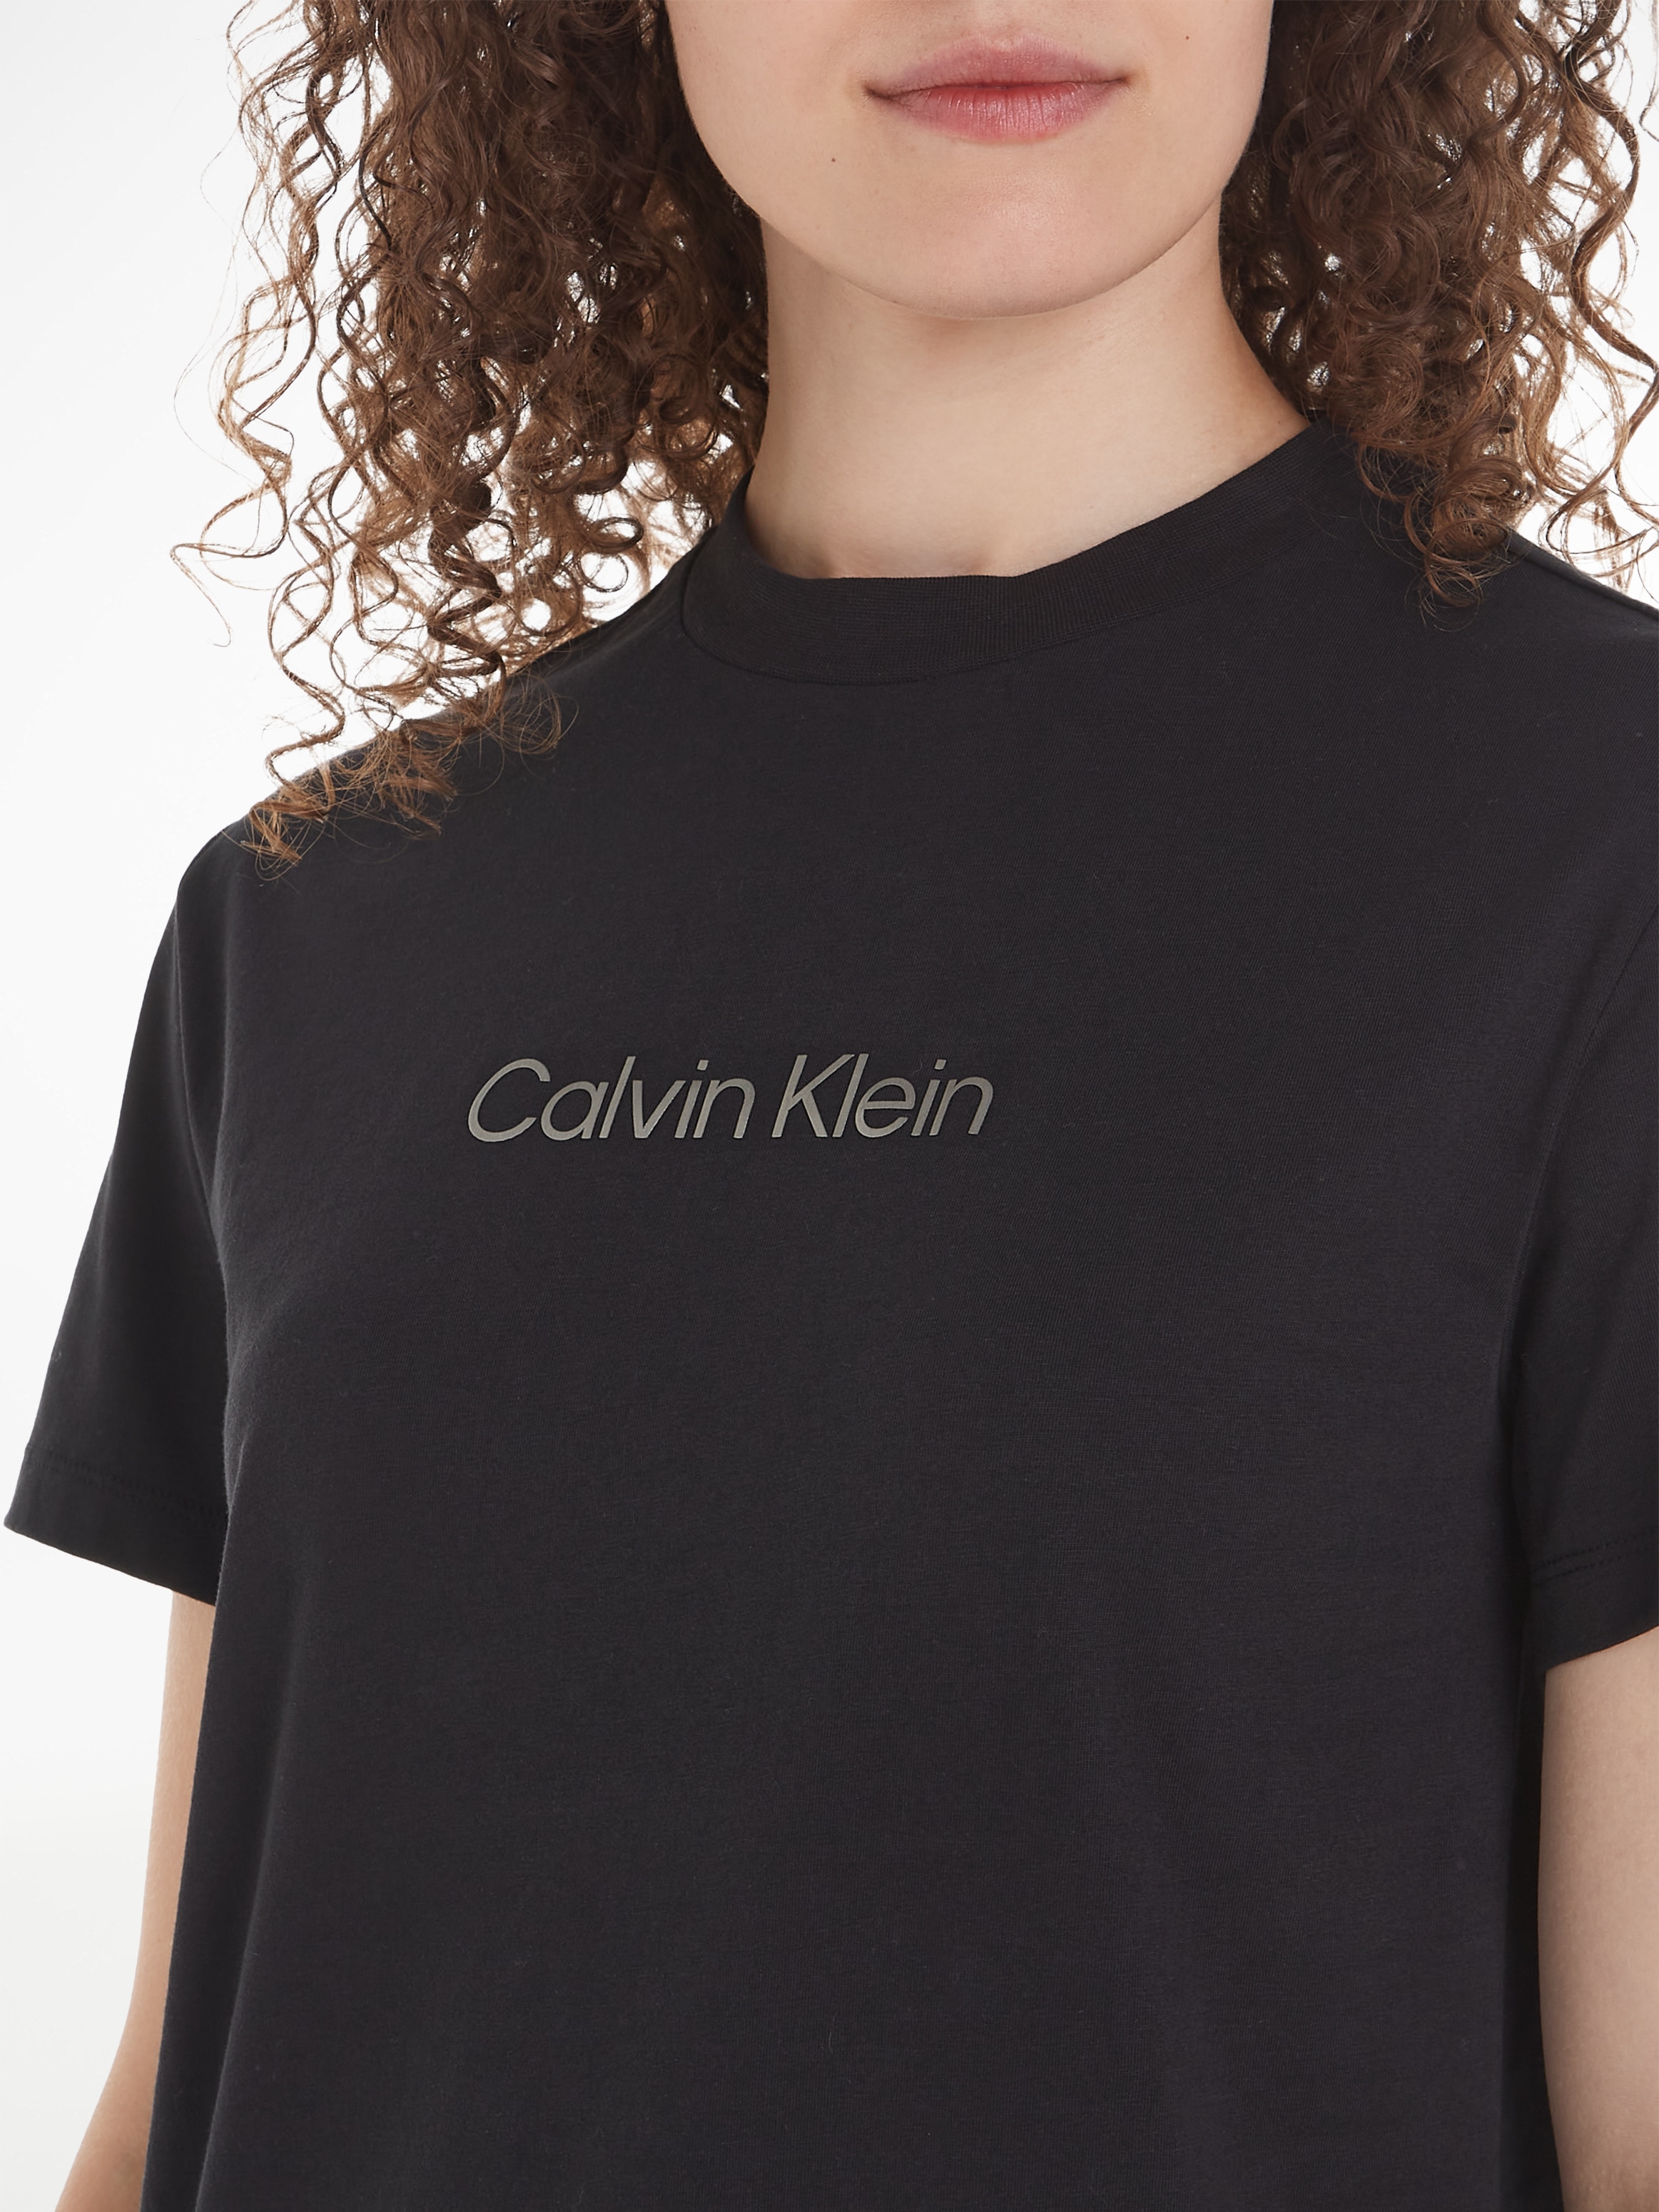 Brust der auf mit Klein OTTO T-Shirt T-SHIRT«, LOGO bei Print online Klein METALLIC Calvin »HERO Calvin